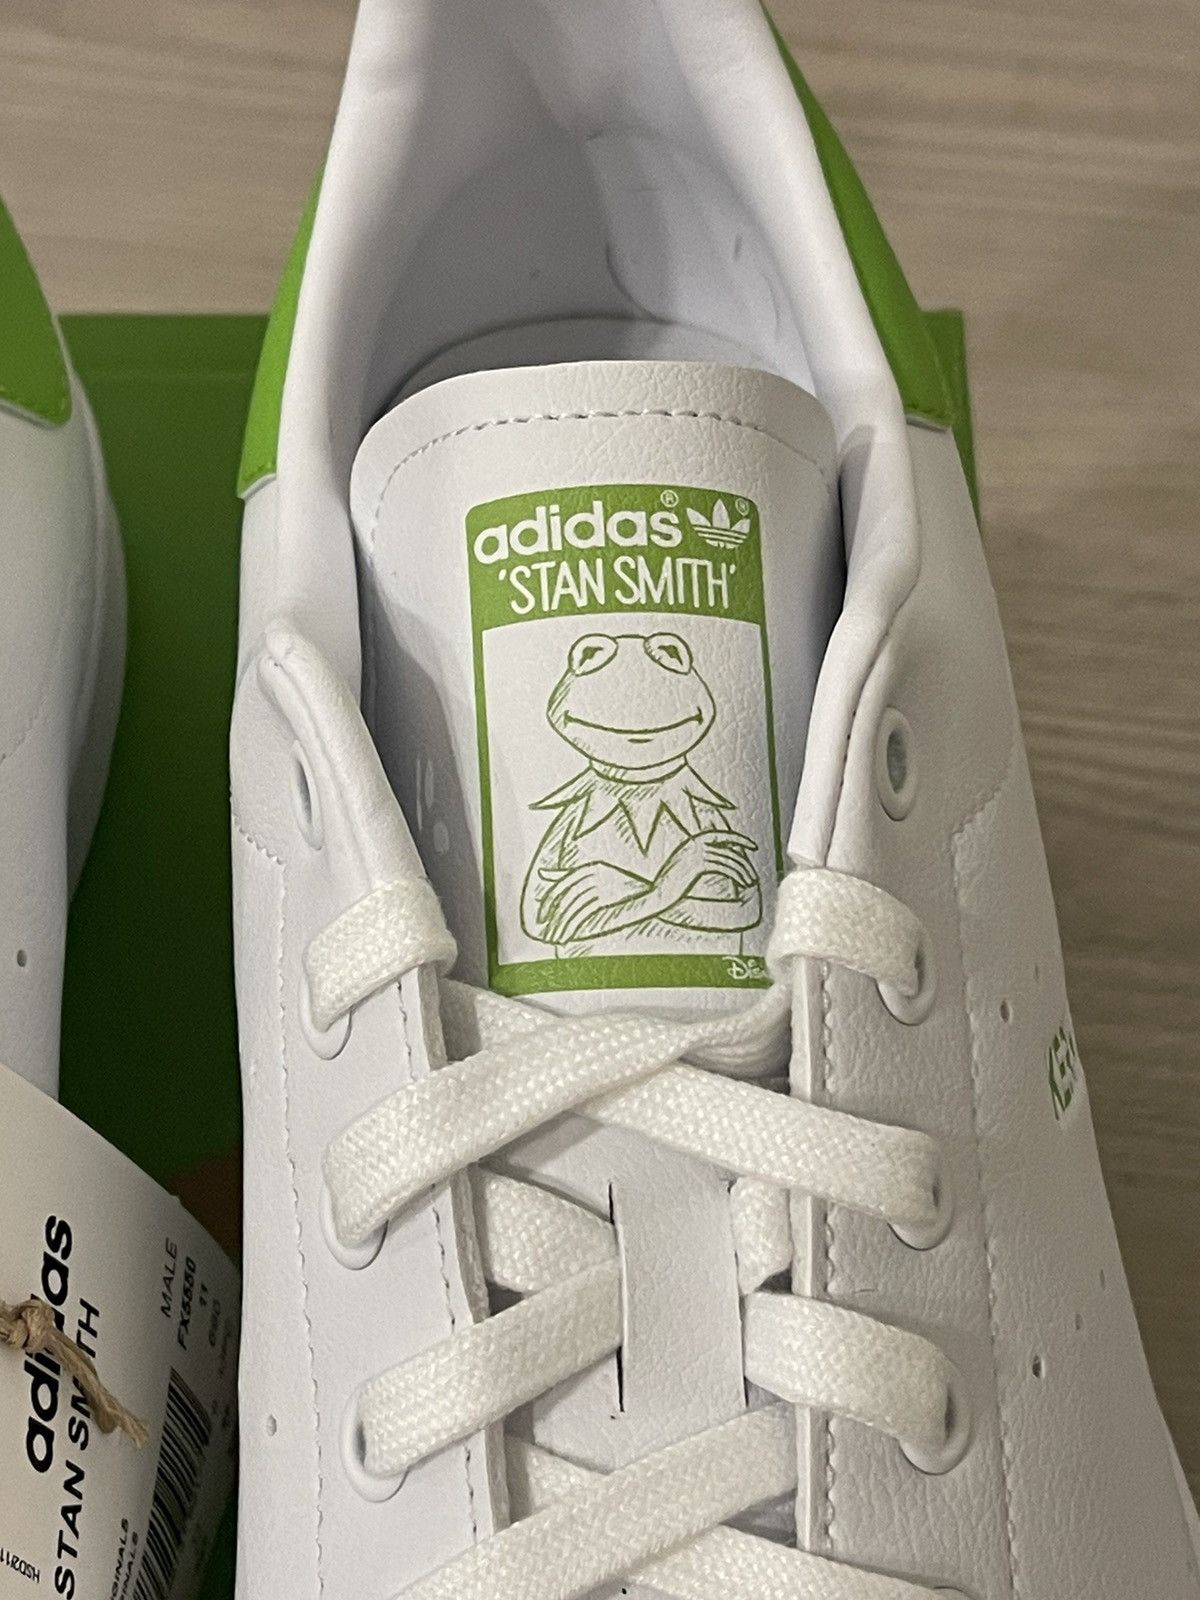 Adidas Kermit Stan Smith Size US 11.5 / EU 44-45 - 6 Thumbnail